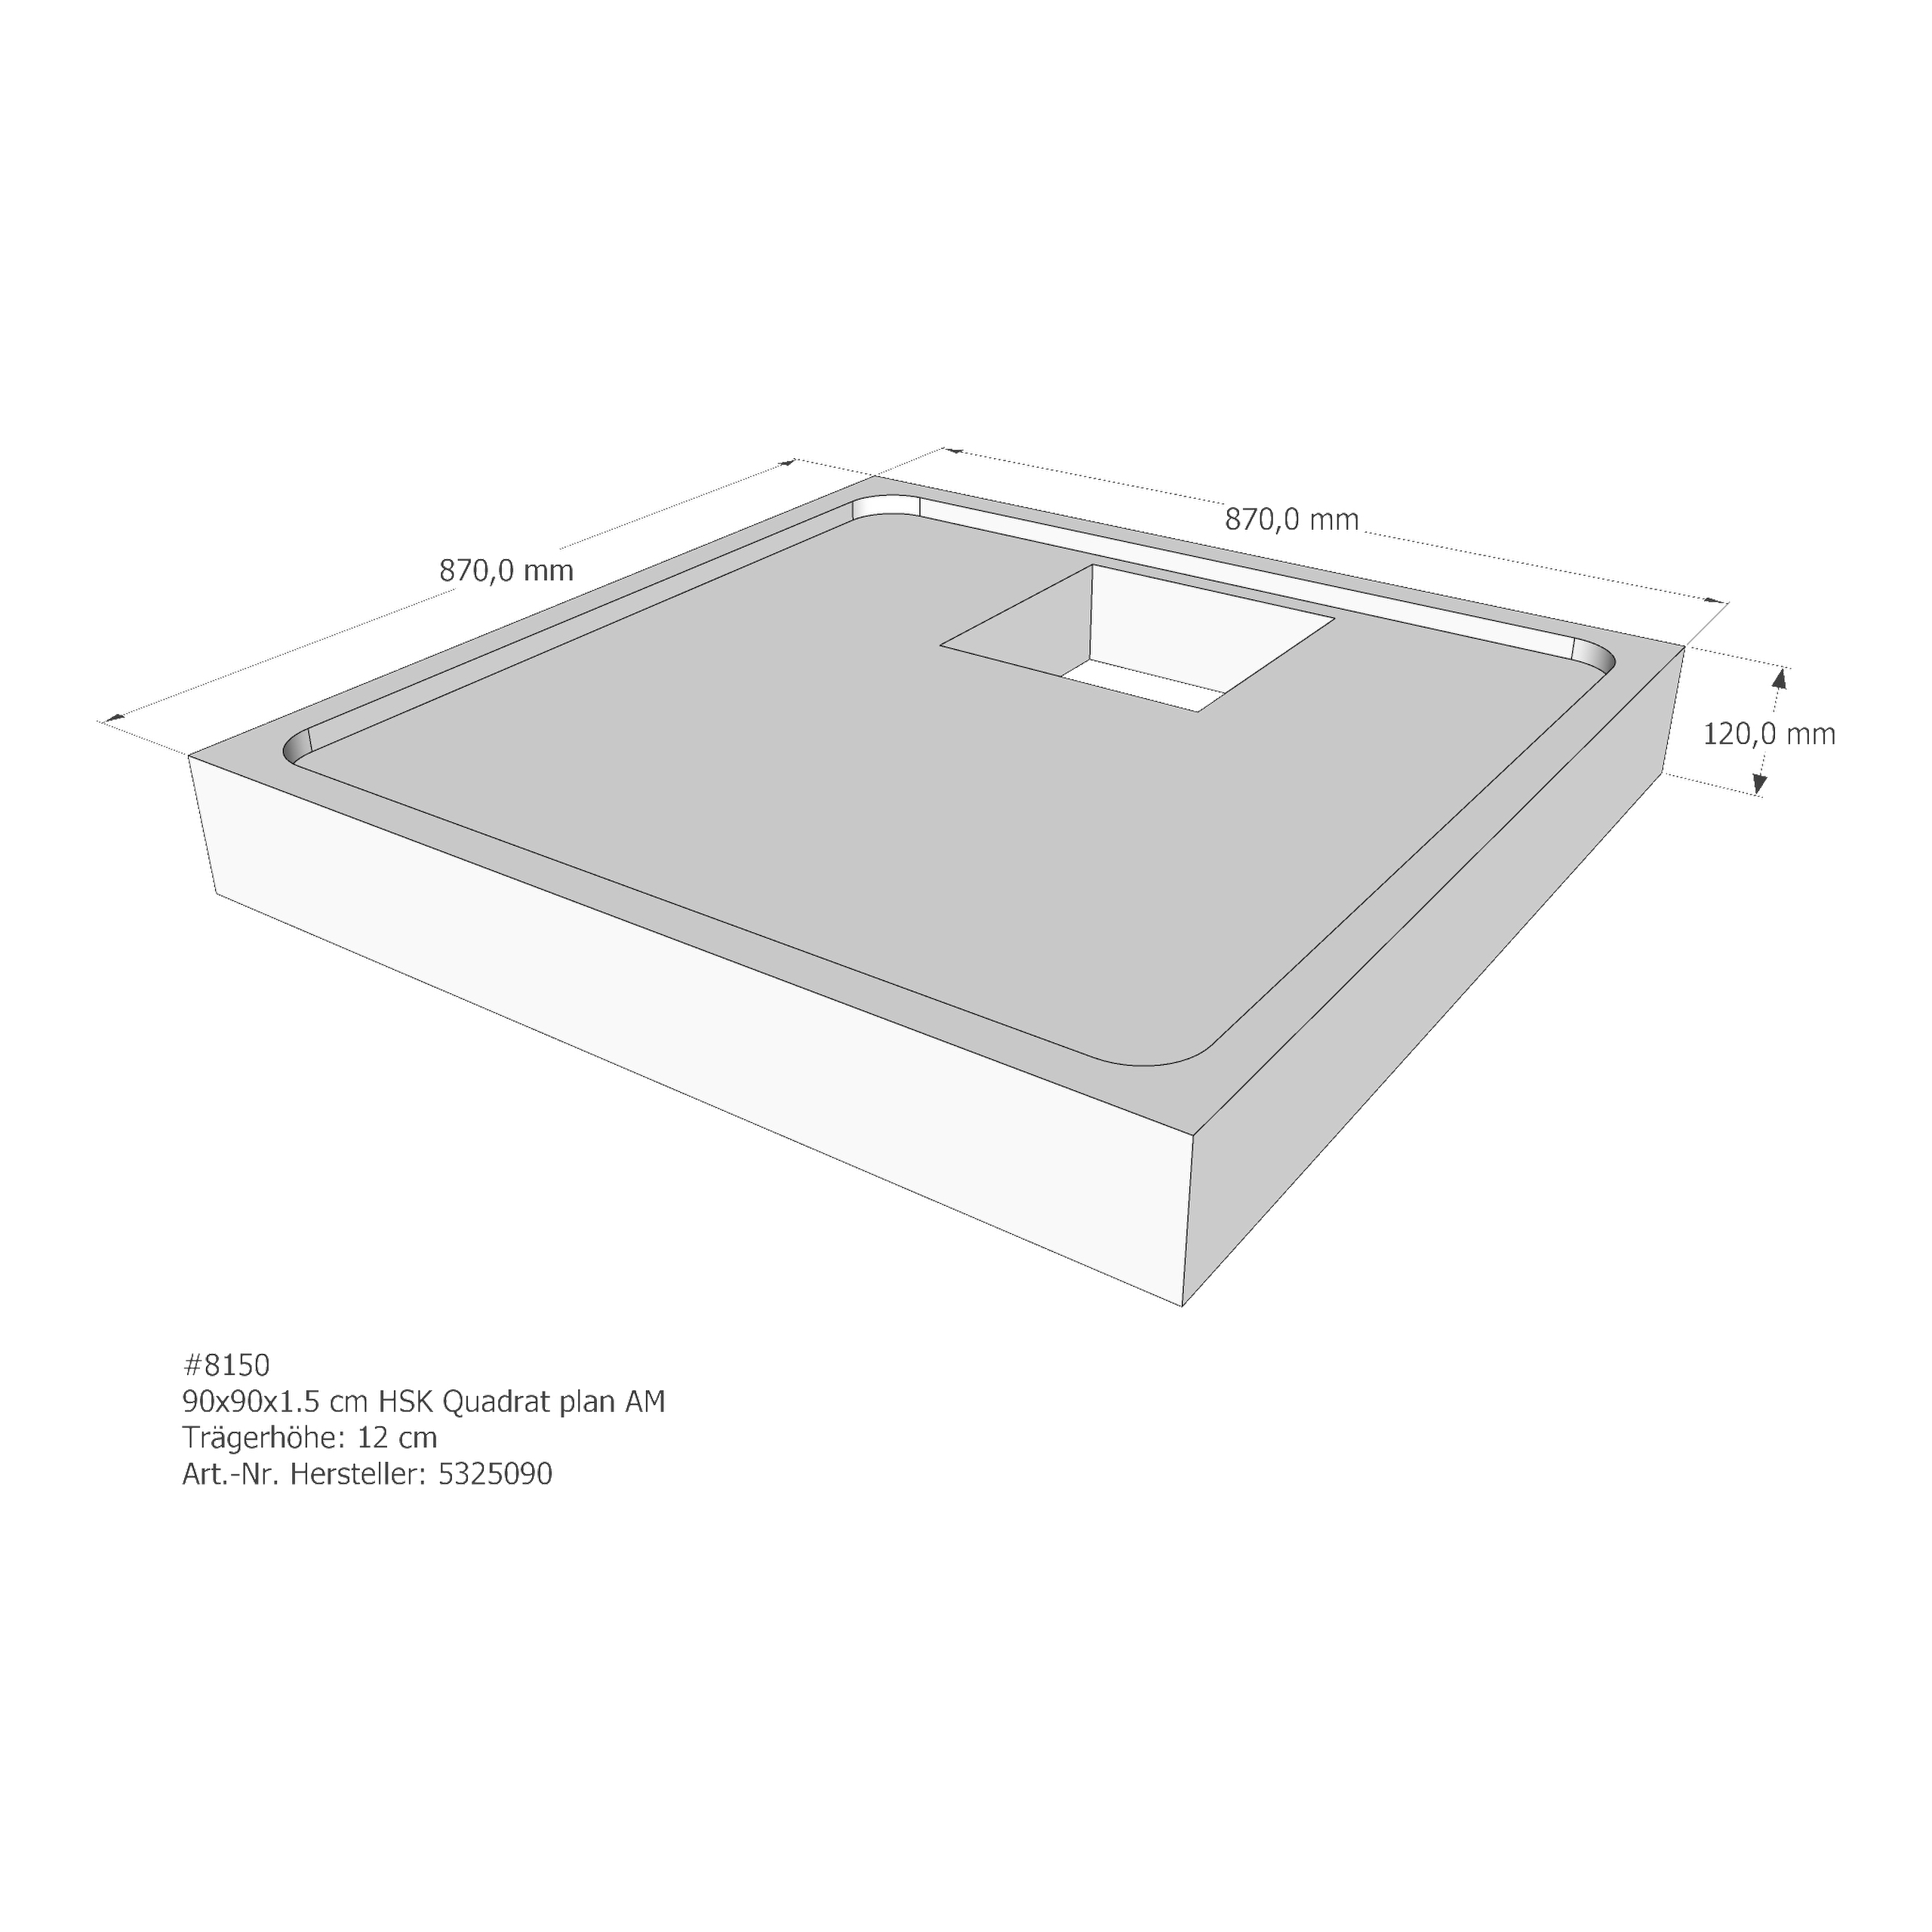 Duschwannenträger für HSK Quadrat plan 90 × 90 × 1,5 cm